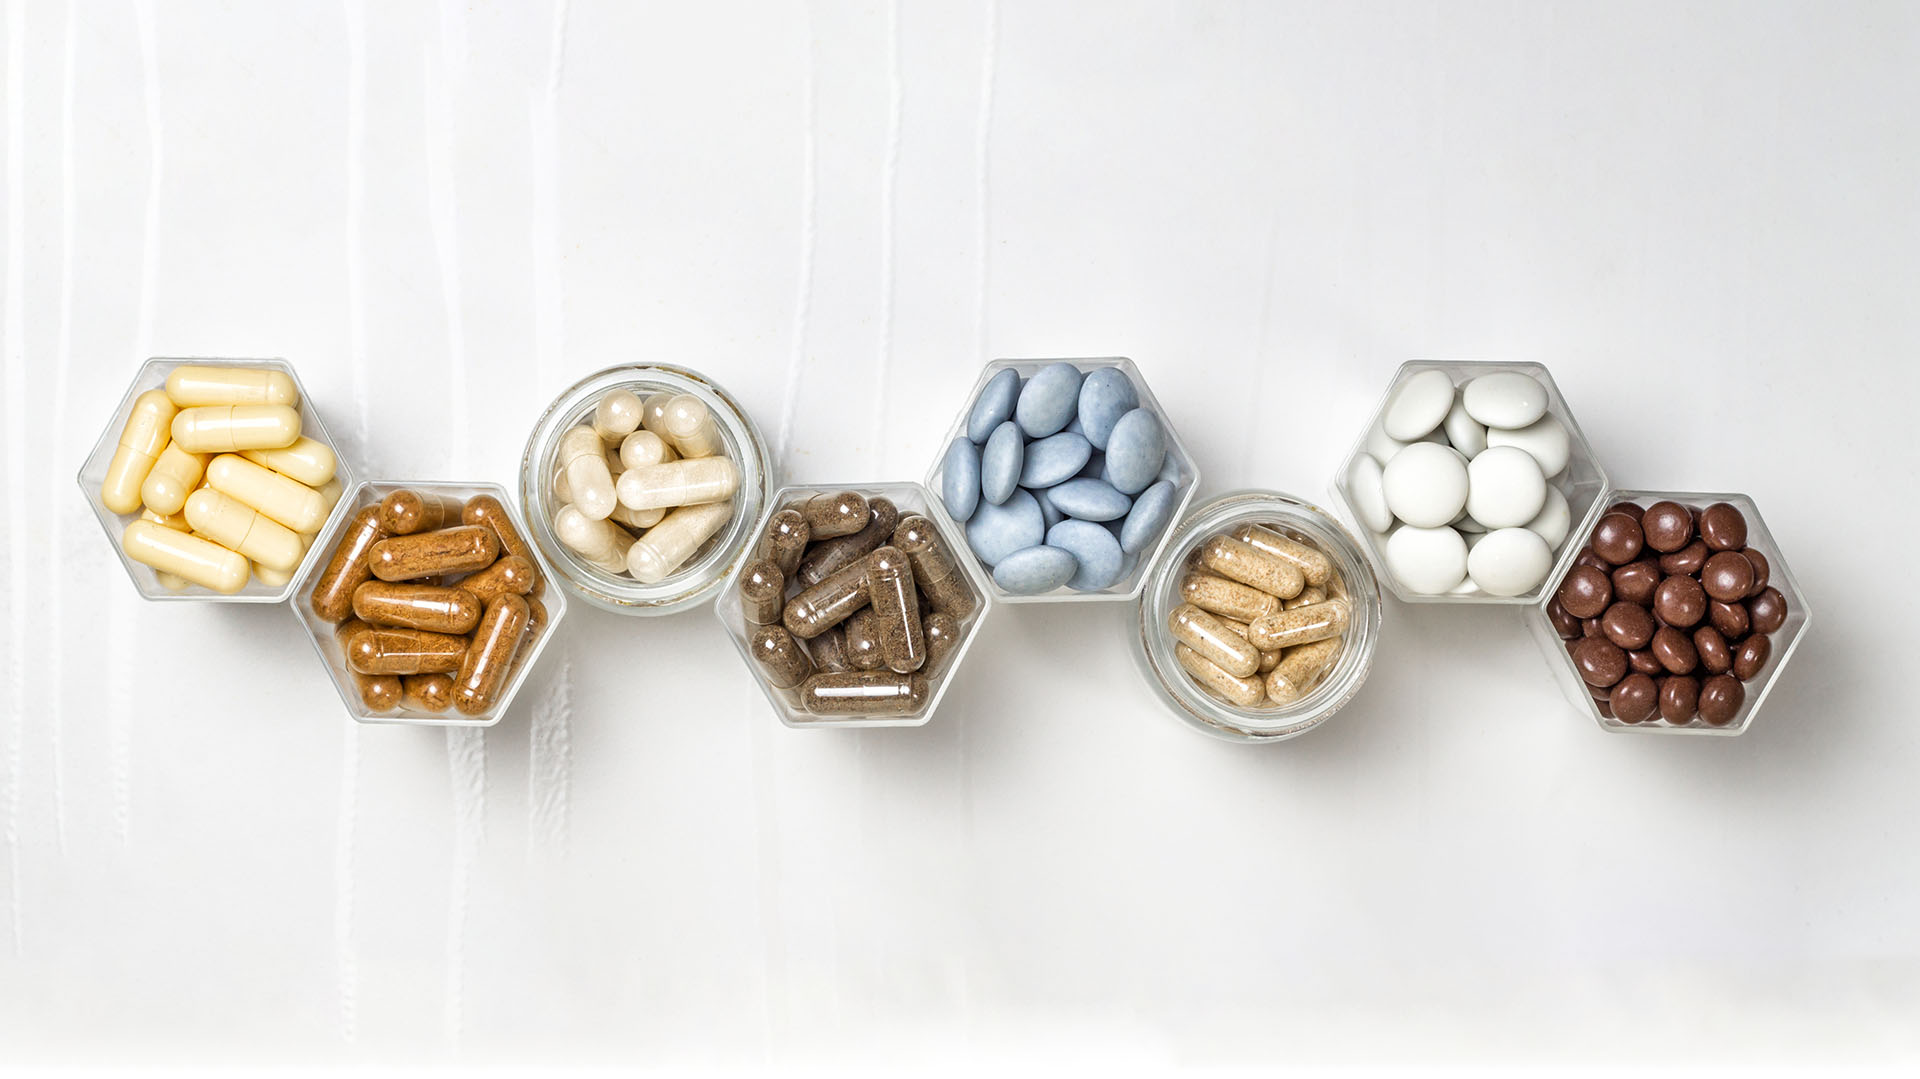 Oligoelementos como el zinc, el selenio, y las vitaminas A, B6, B12, C, D y E en nuestra alimentación y en suplementos juegan un rol clave (Shutterstock.com)